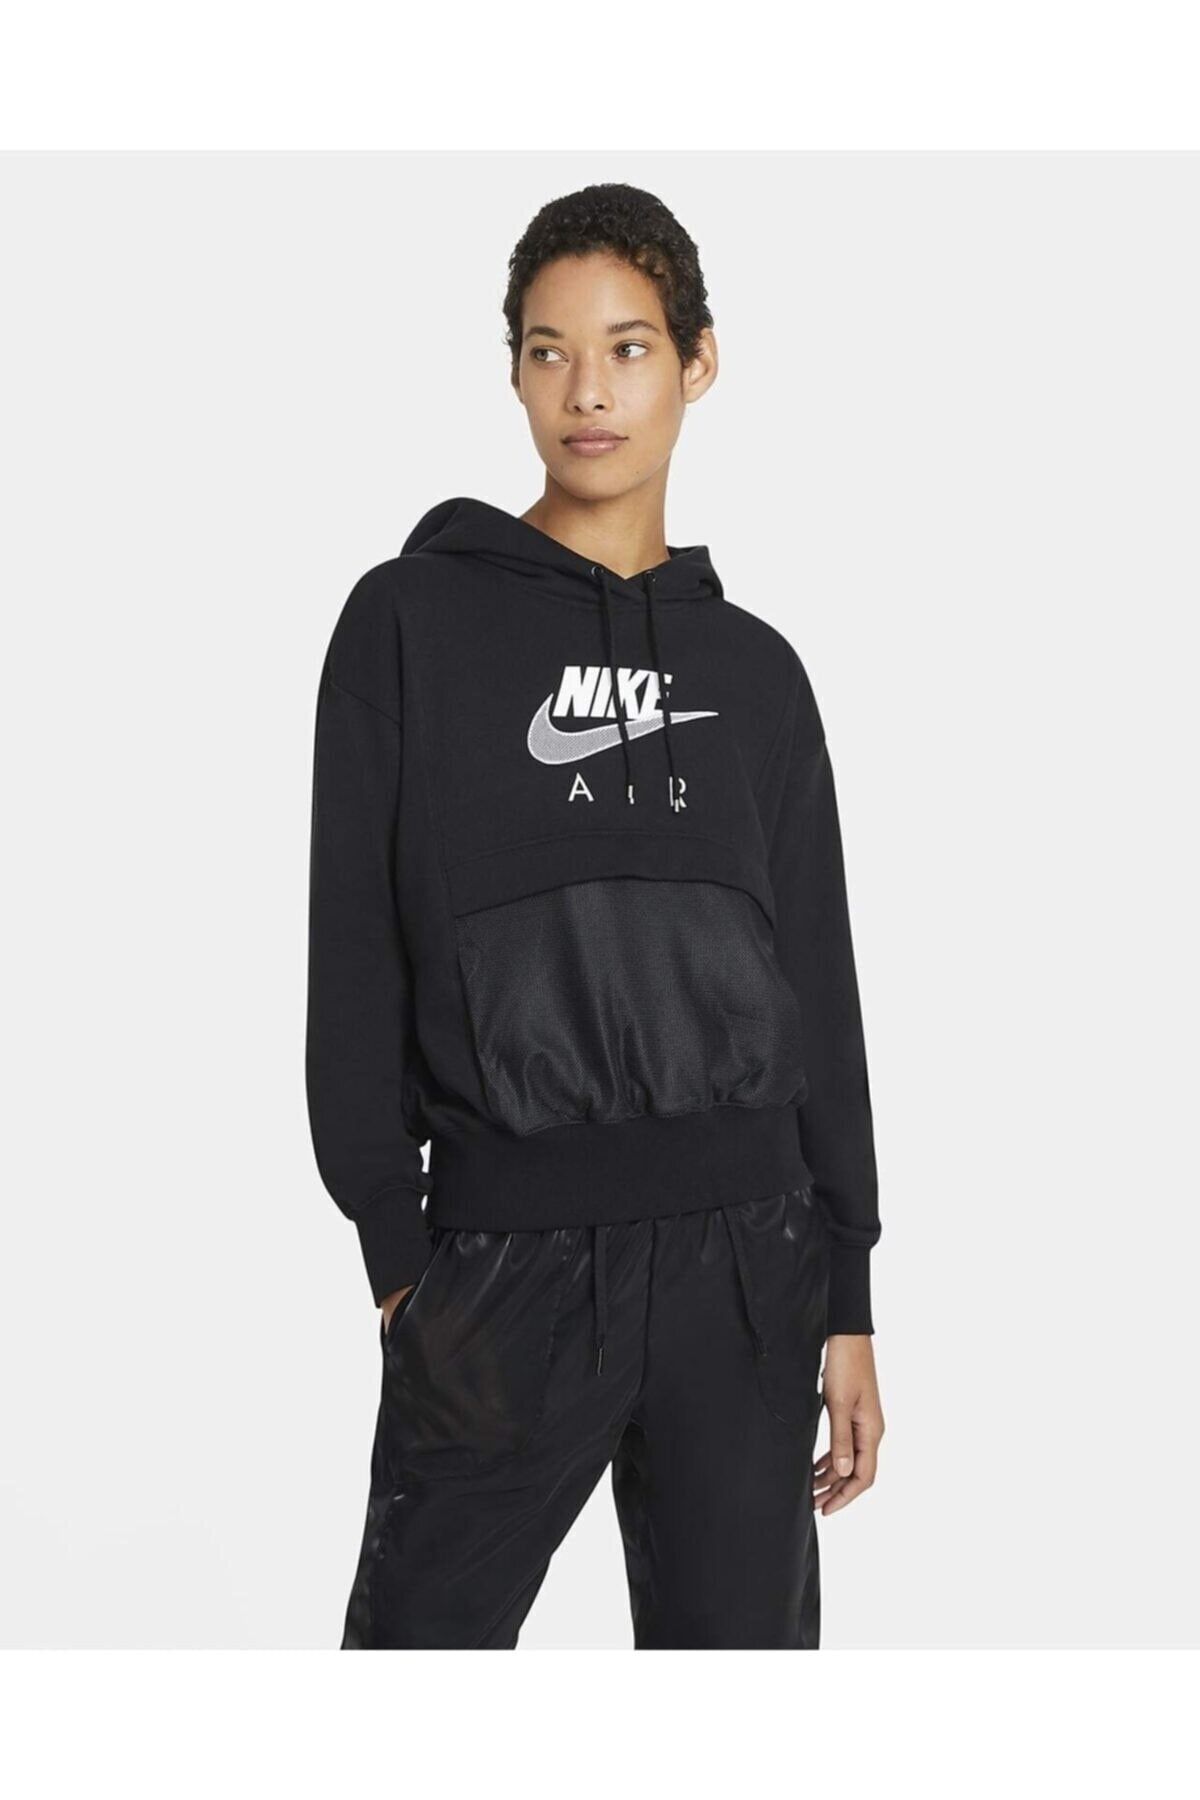 Nike Sportswear Air Hoodie Kadın Sweatshirt -siyah Cz8620-010